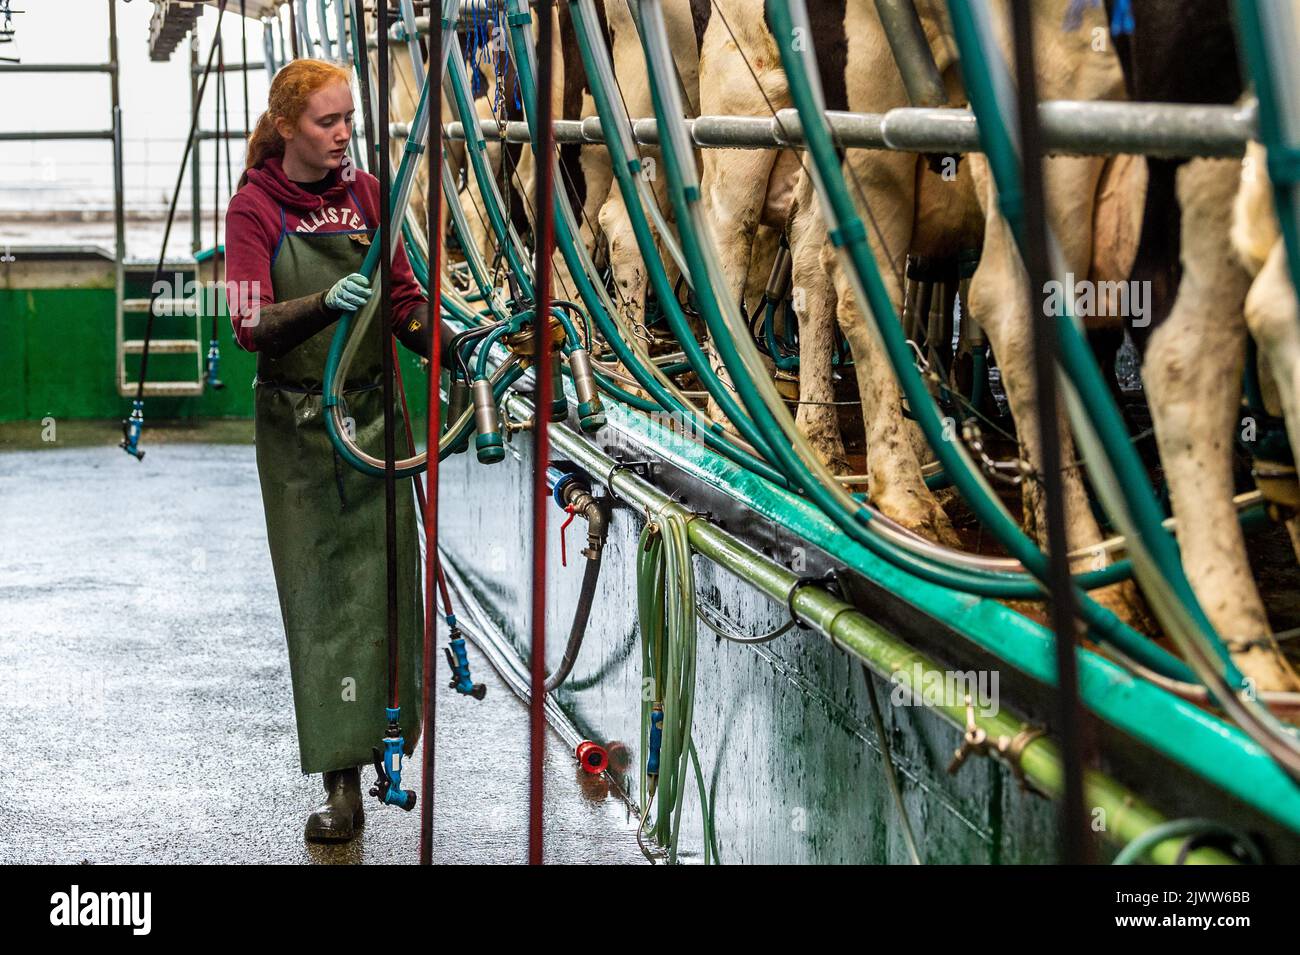 Agricultura: Timoleague, West Cork, Irlanda. 6th de Septiembre de 2022. La 160 fuerte manada de productores lecheros DJ Keohane son ordeñados en su granja en Timoleague, West Cork. El hijo de DJ, Daniel, de 11 años, y su hija Clíodhna, de 15 años, ayudan con el ordeño. El salón tiene 20 vacas a cada lado y el ordeño se completa en una hora. DJ está produciendo actualmente aproximadamente 20 litros por vaca. Crédito: AG News/Alamy Live News. Foto de stock